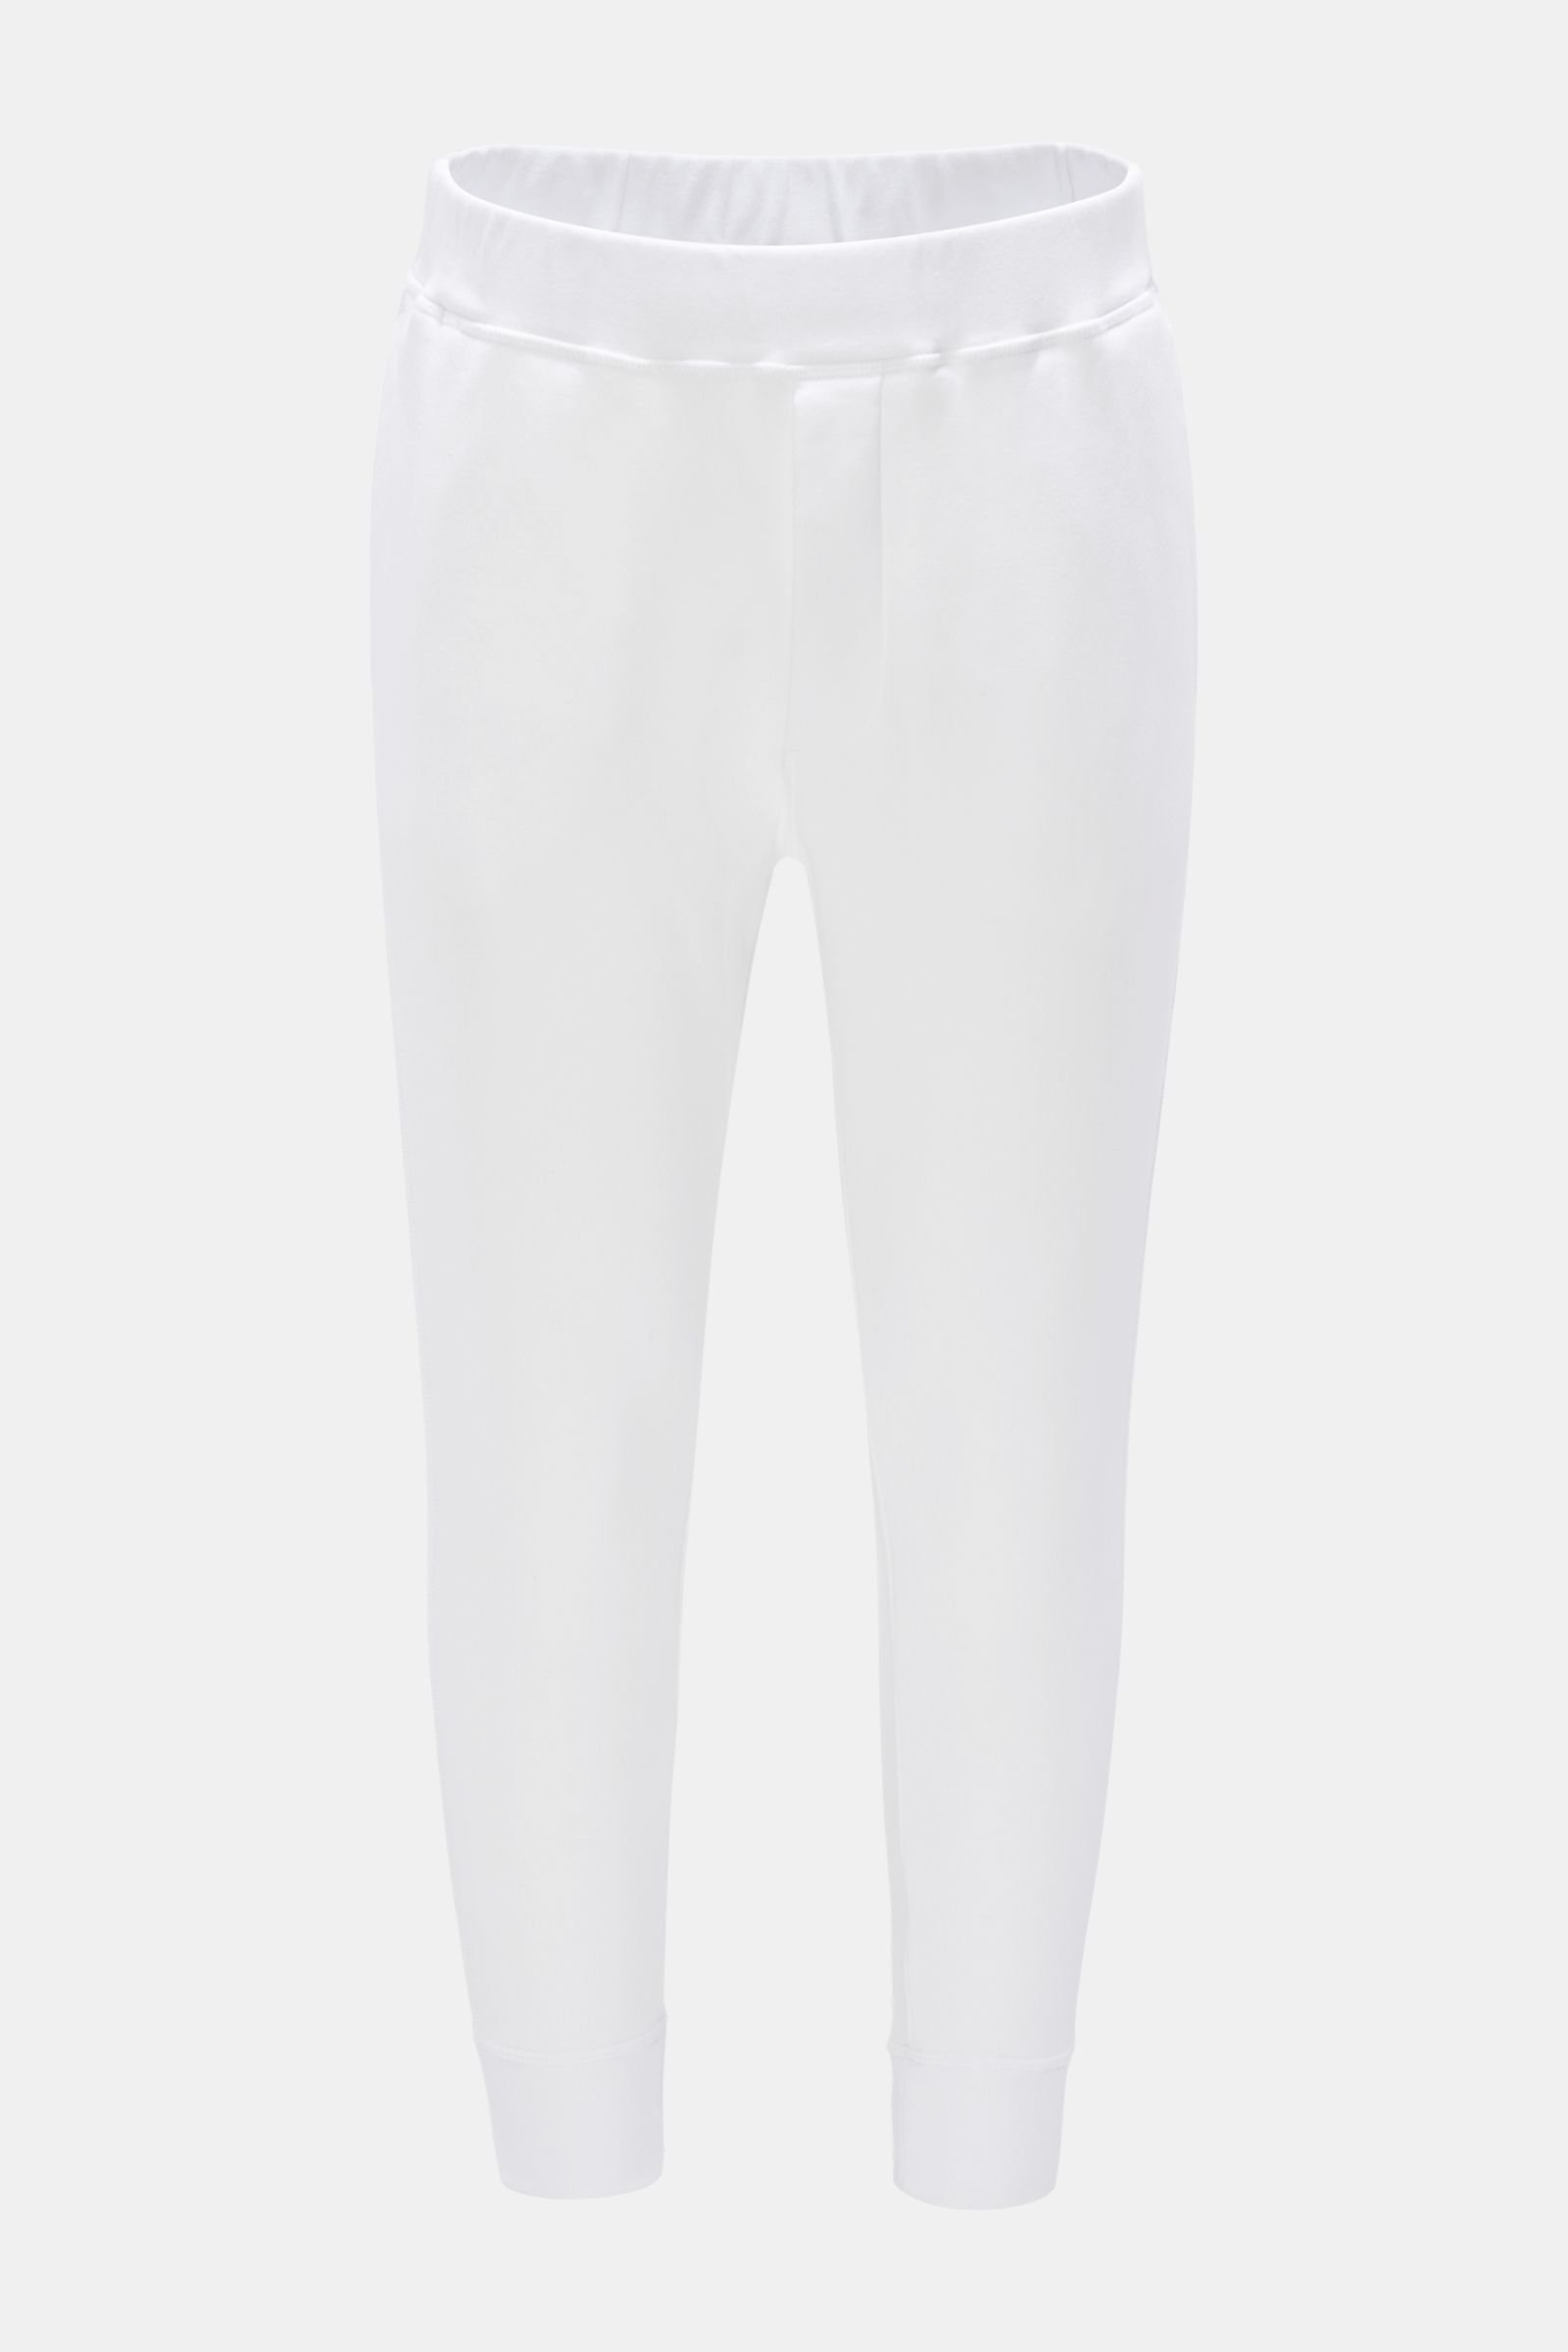 Sweat pants white